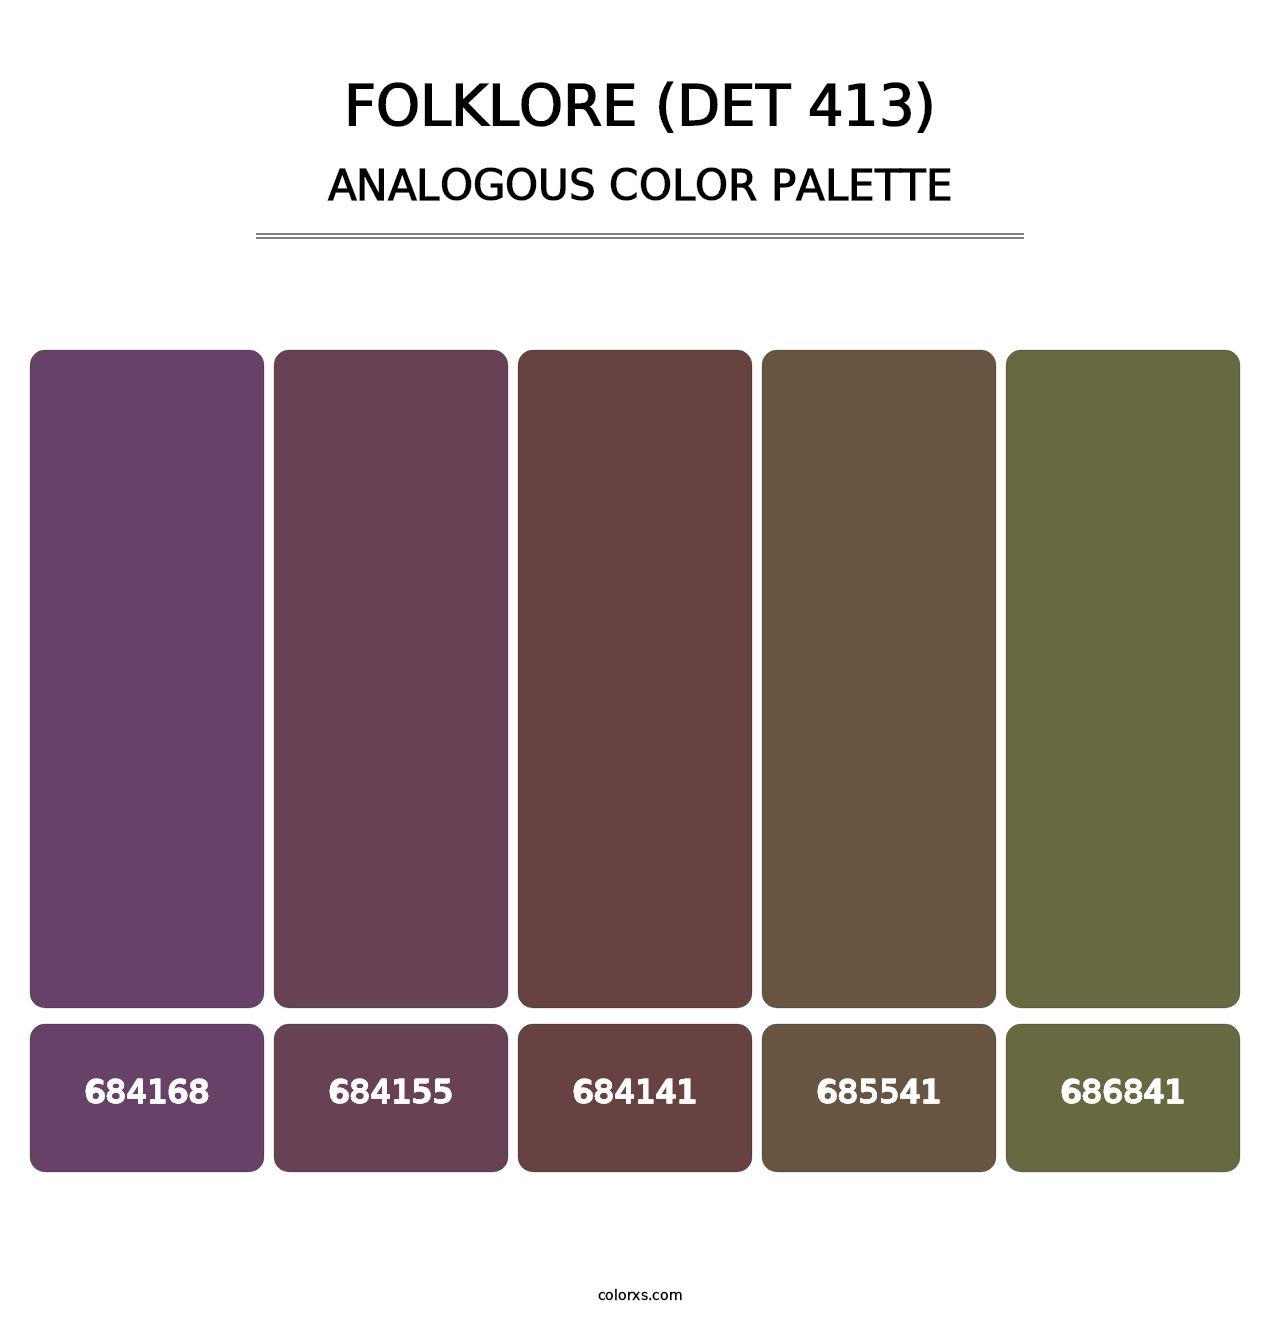 Folklore (DET 413) - Analogous Color Palette